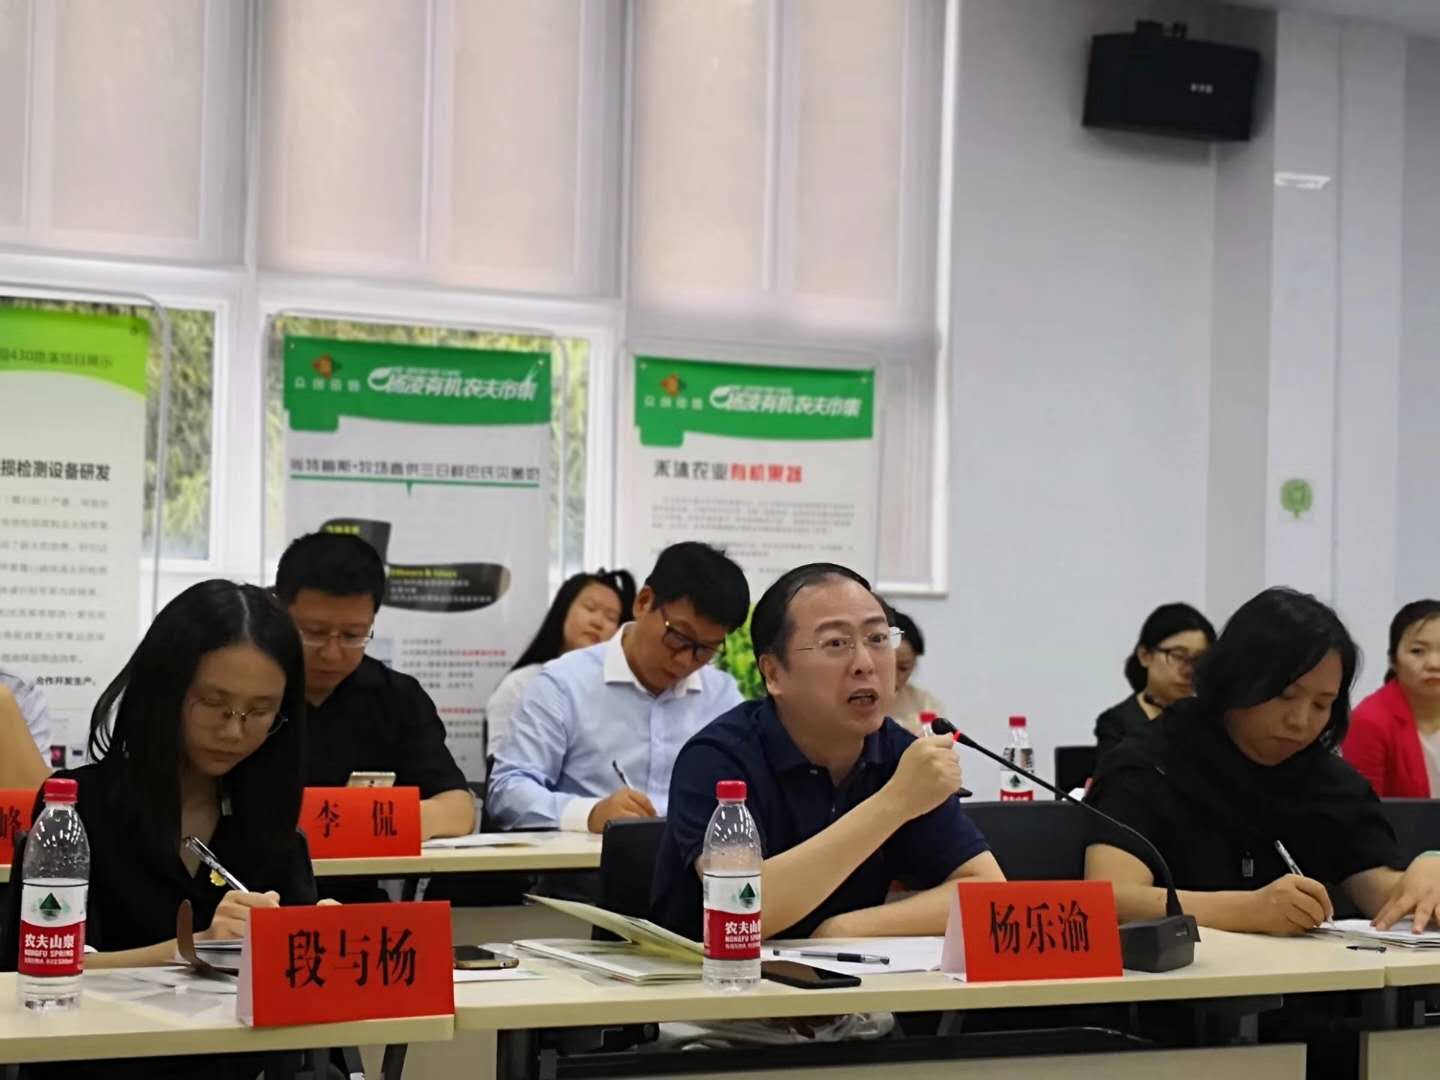 杨凌区人民政府与全经联（北京）产业孵化器有限公司合作签约在众创田园进行